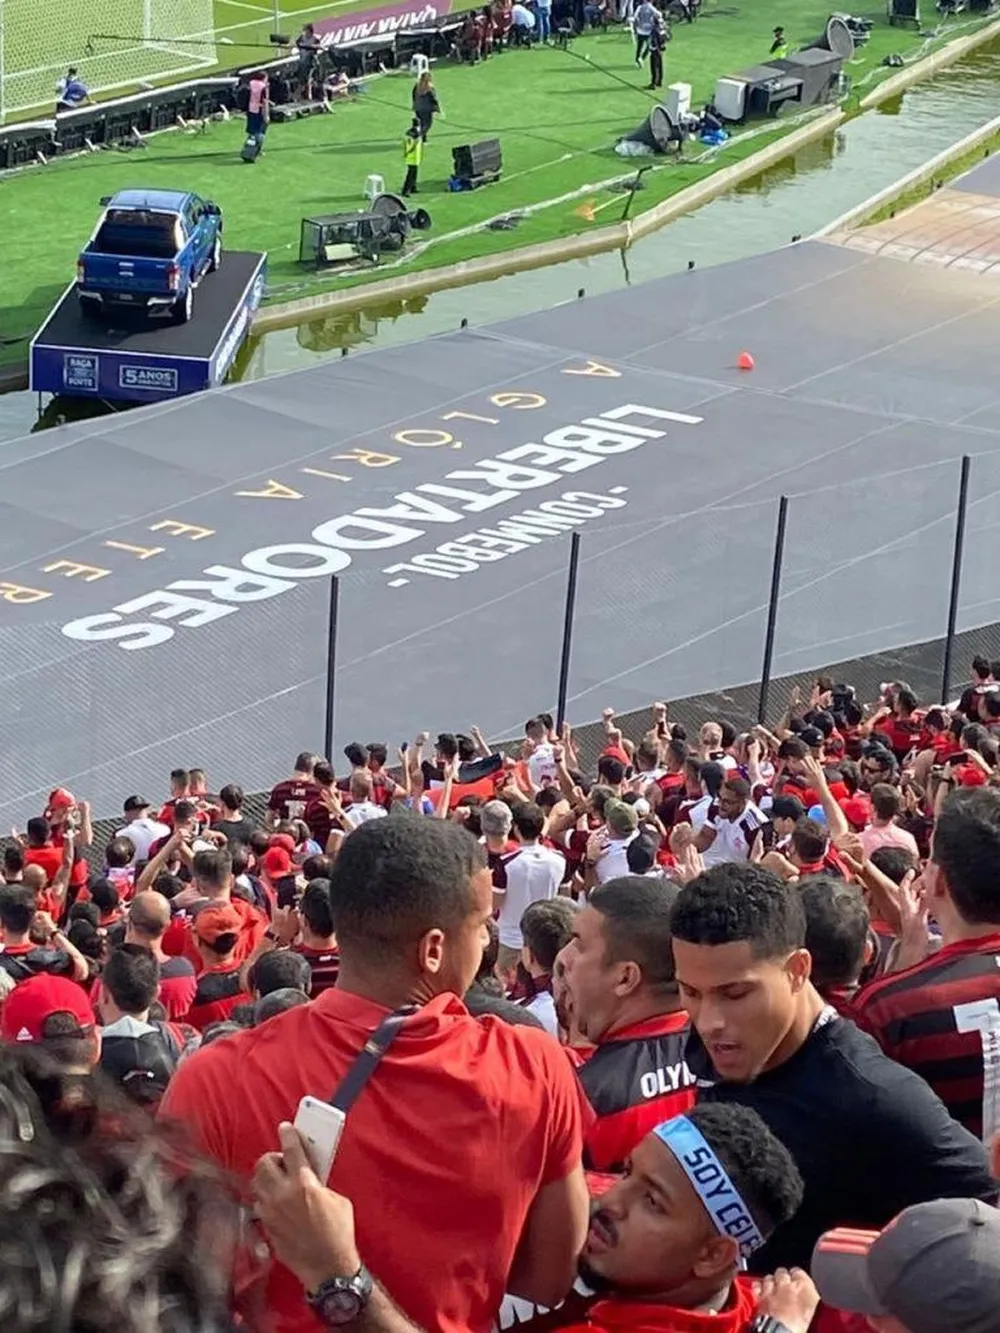 João Gomes tira foto com torcedor na arquibancada durante a final de Libertadores entre Flamengo e Palmeiras - Reprodução de Internet